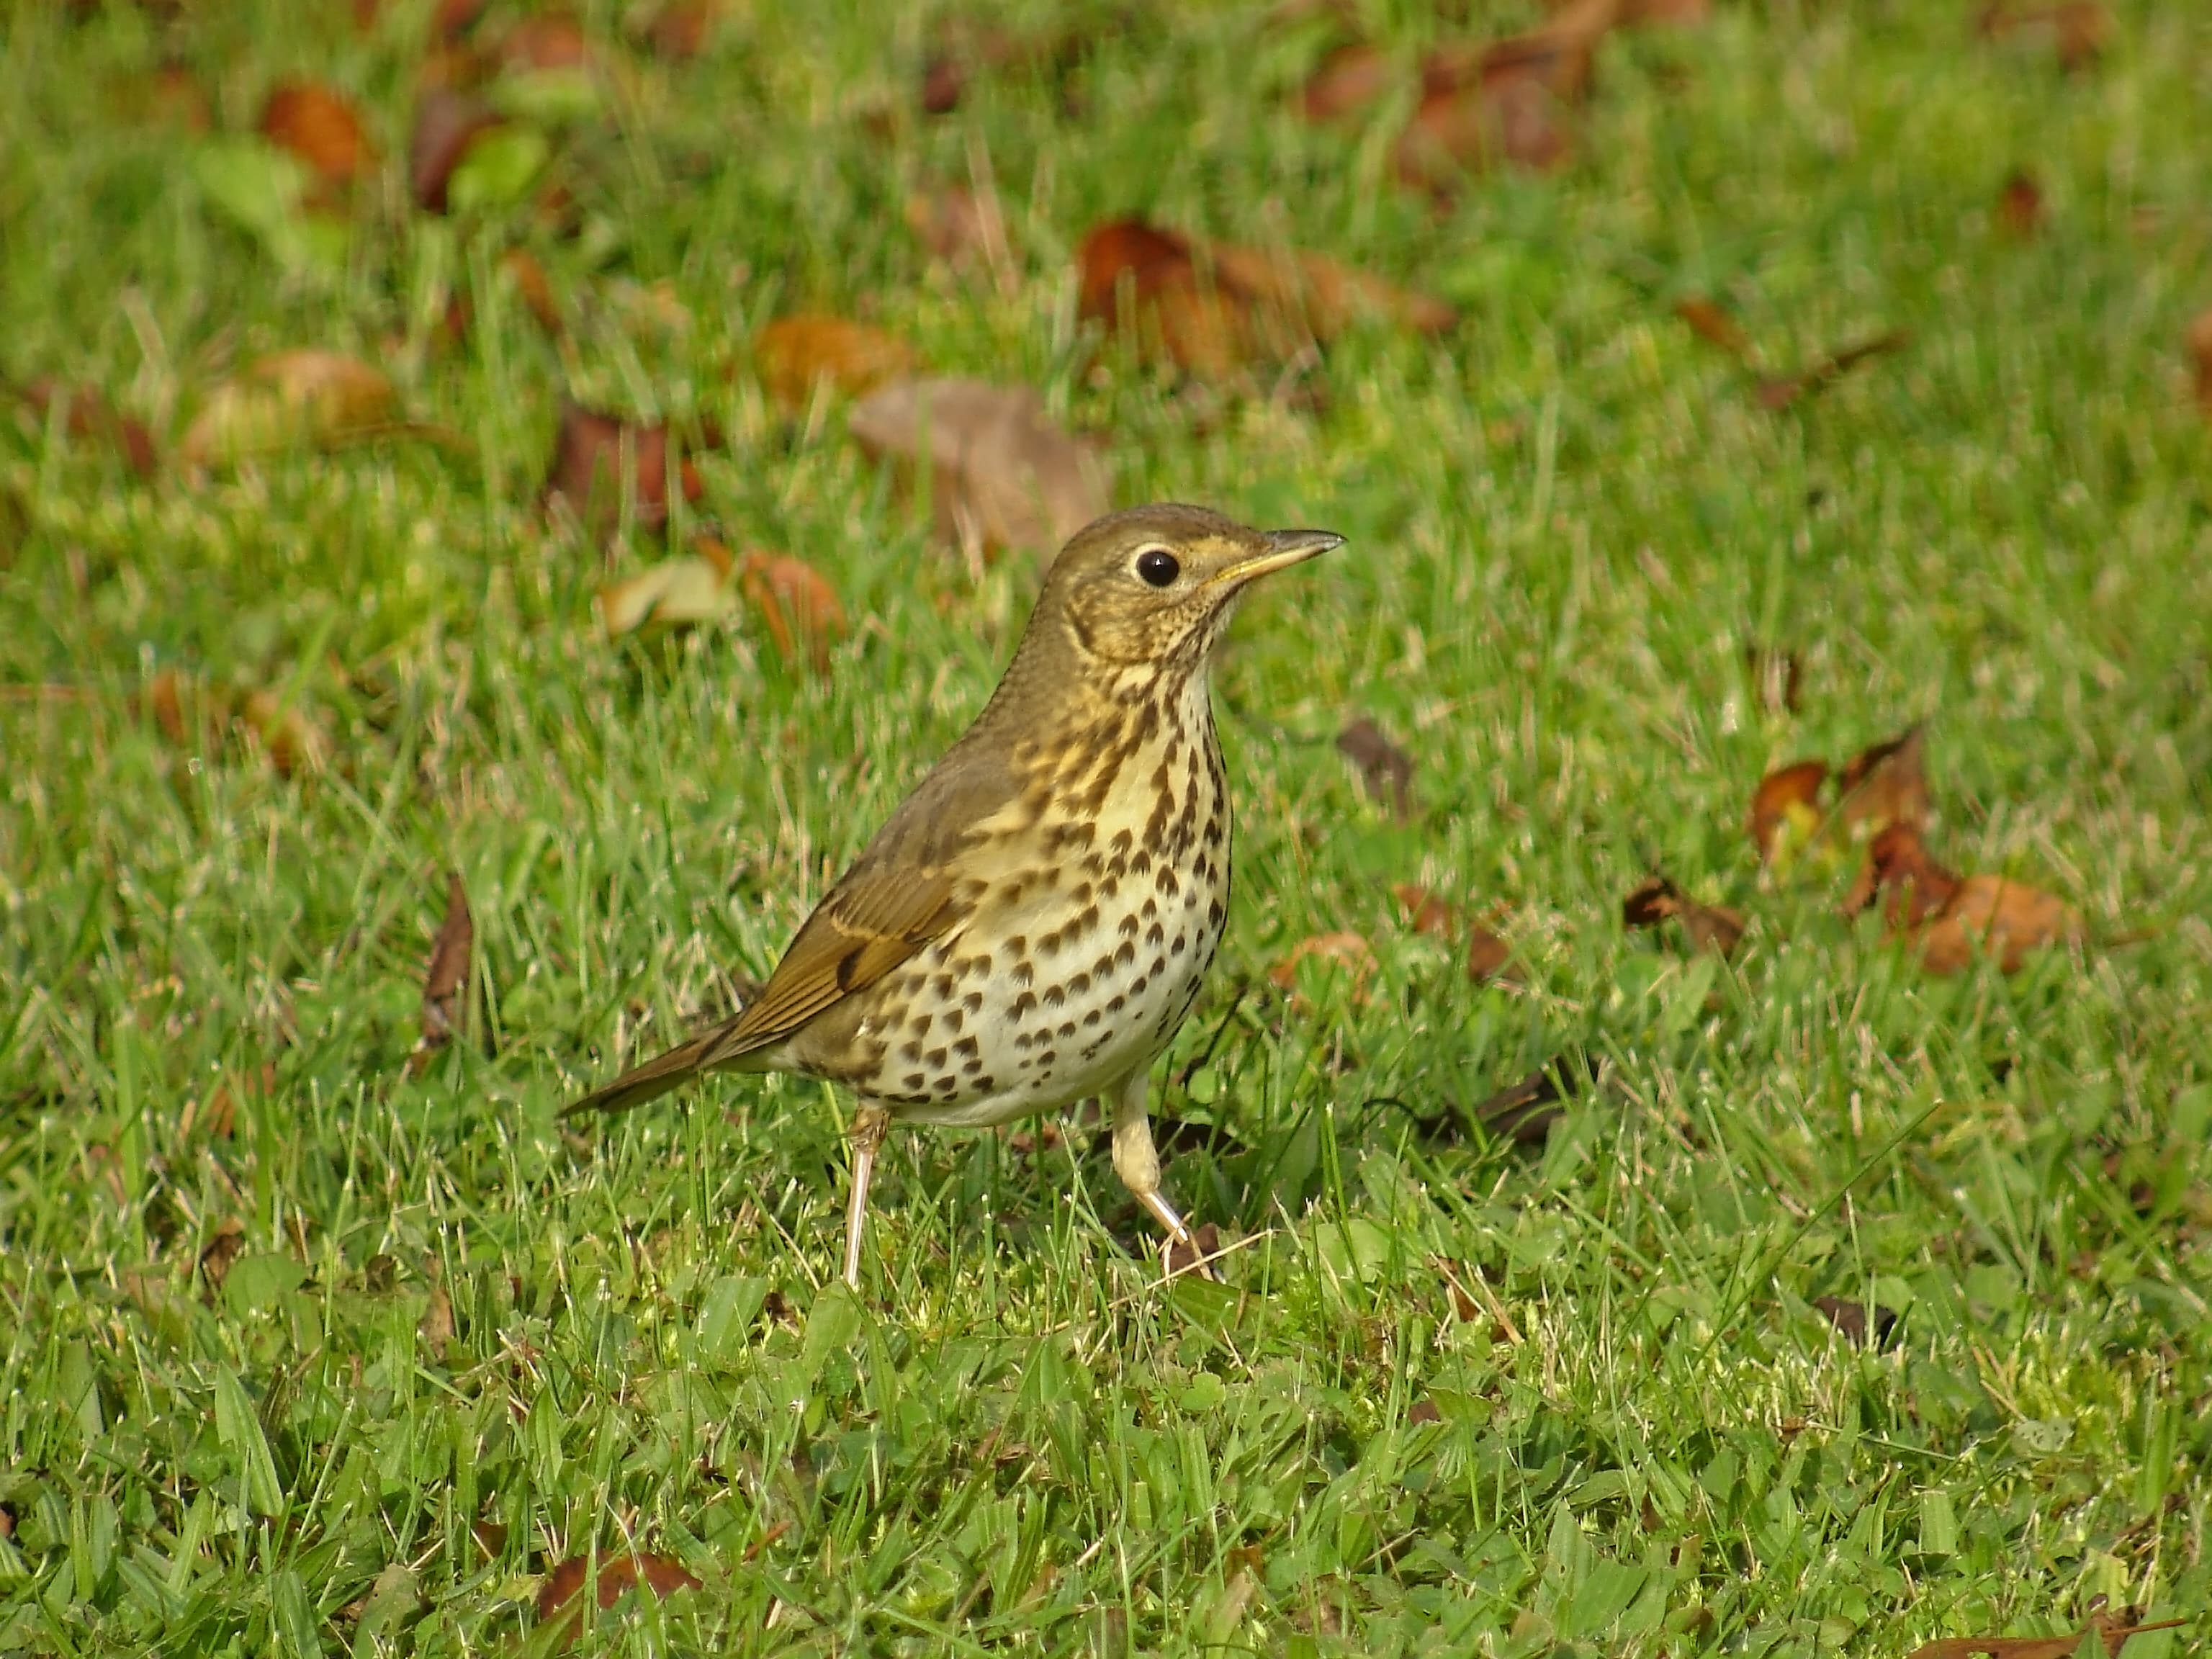 Un oiseau au pelage blanc et marron se déplace sur l'herbe verte.